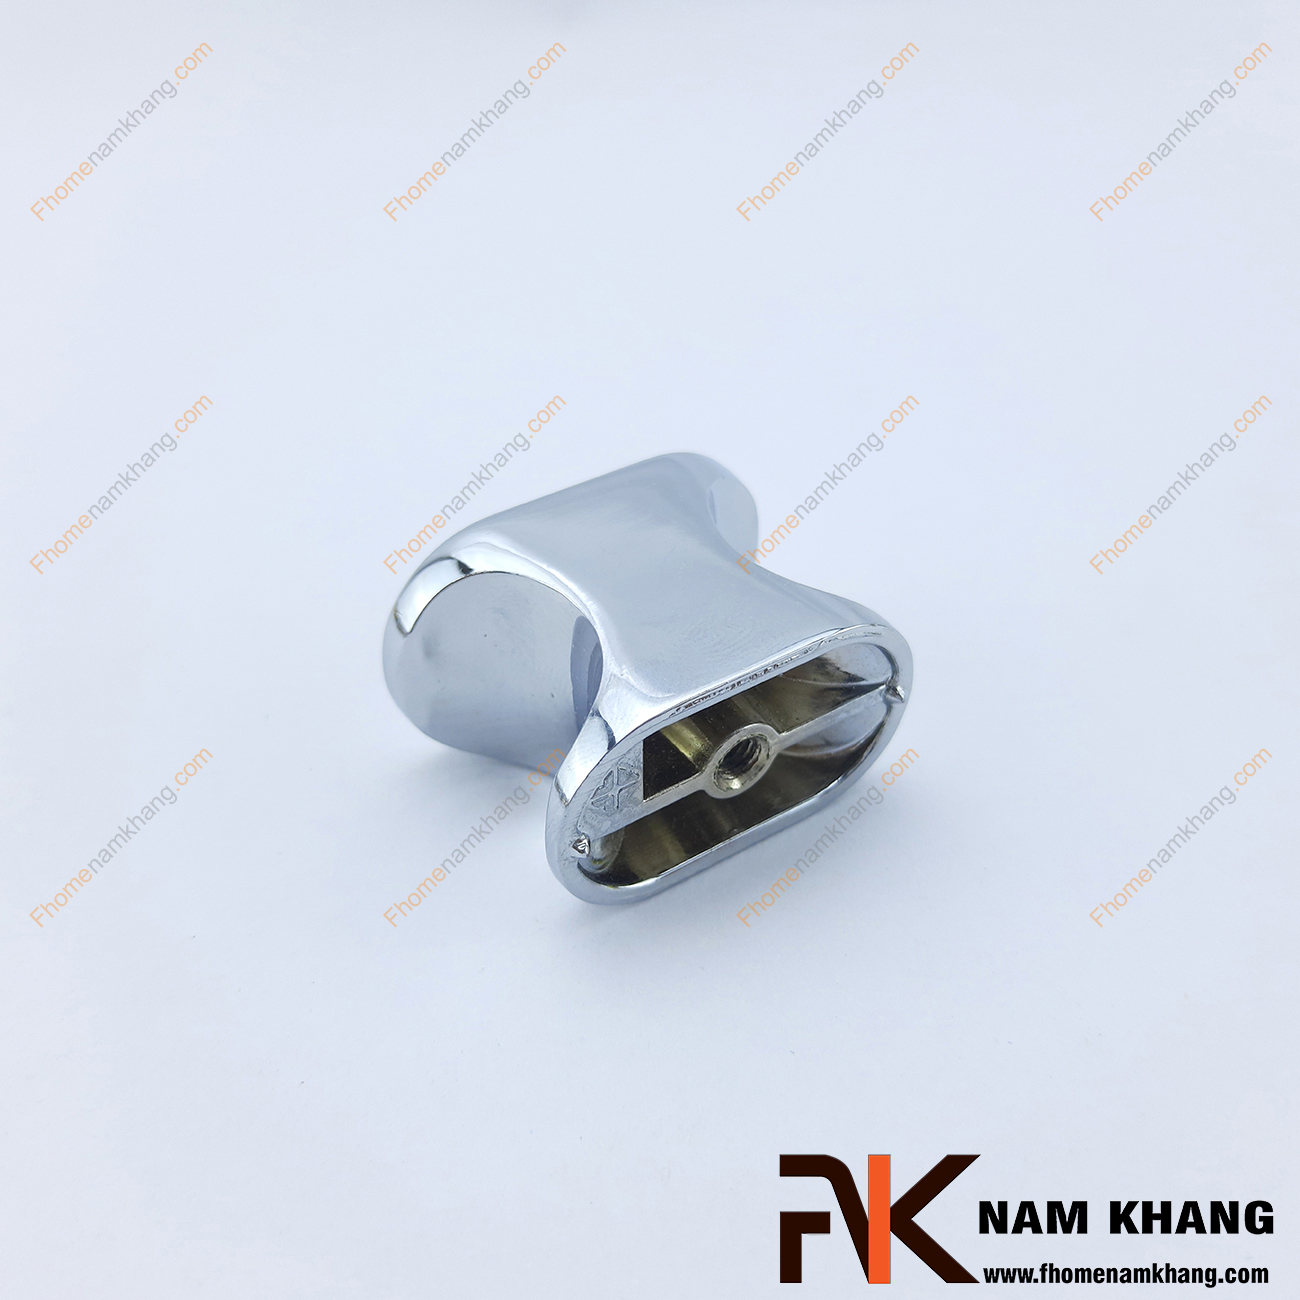 Núm nắm tủ màu trắng bạc NK133-X có thiết kế lạ mắt với phần thân lõm vào bên trong vừa vặn một ngón tay để có thể dễ dàng cầm nắm và đóng mở cánh cửa tủ. Sản phẩm được mạ trắng bạc trên nền chất liệu hợp kim cao cấp 